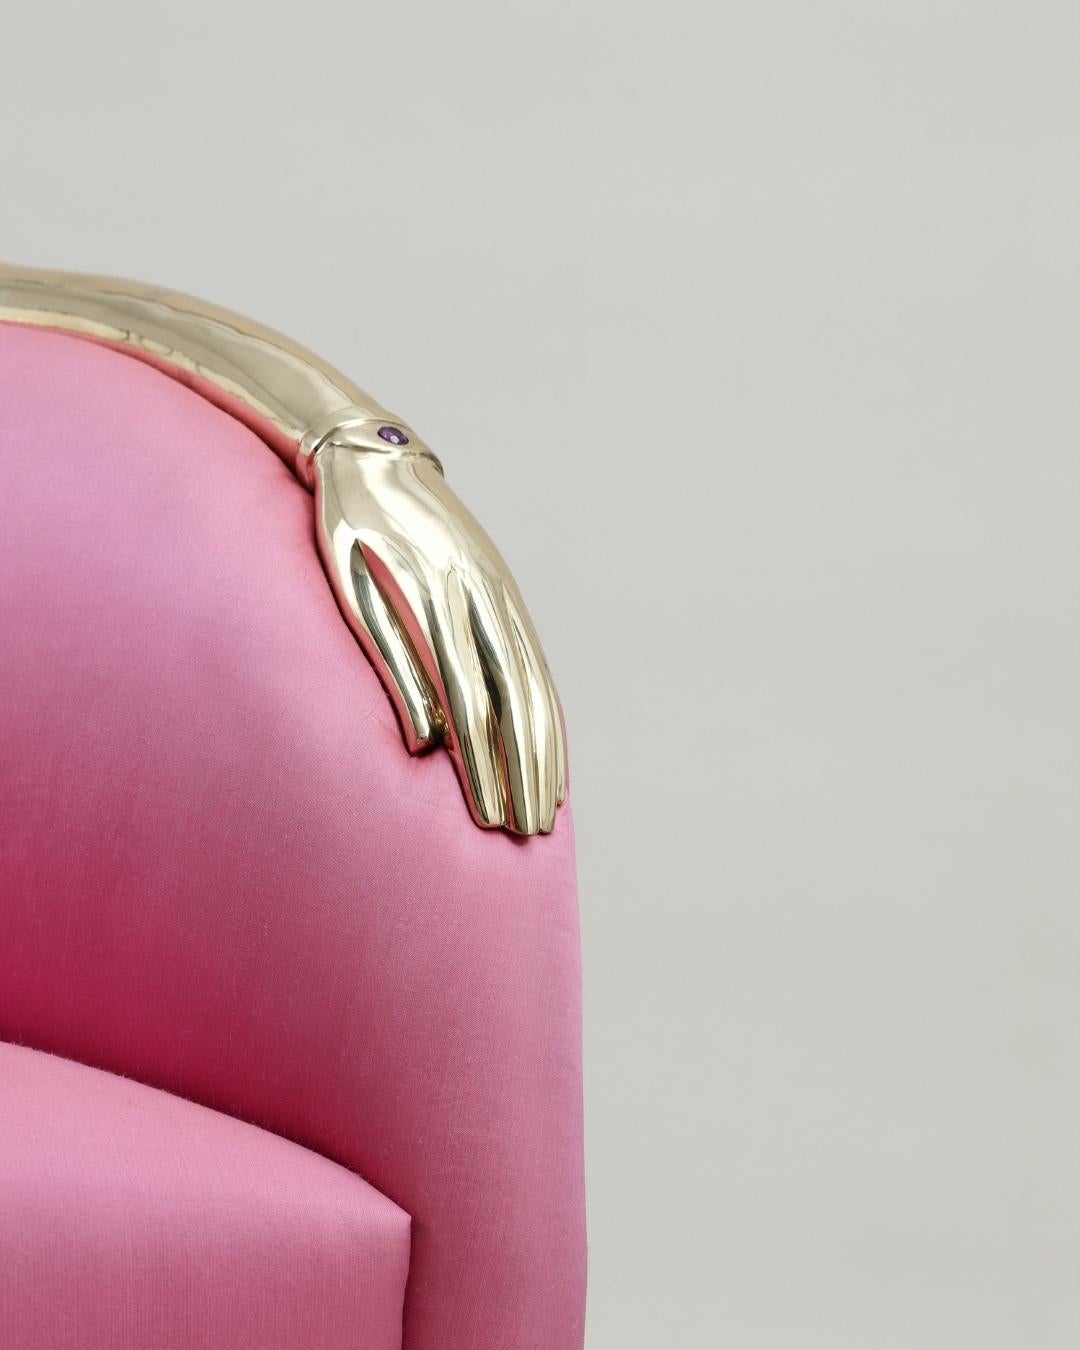 Ein vertrauenserweckendes Sofa, angelehnt an Dalís Kompositionen für Jean Michel Frank. Eine typische surreale Interpretation eines extrem bürgerlichen und konventionellen Möbelstücks. Dieses Stück trägt das Aussehen menschlicher Elemente - eine